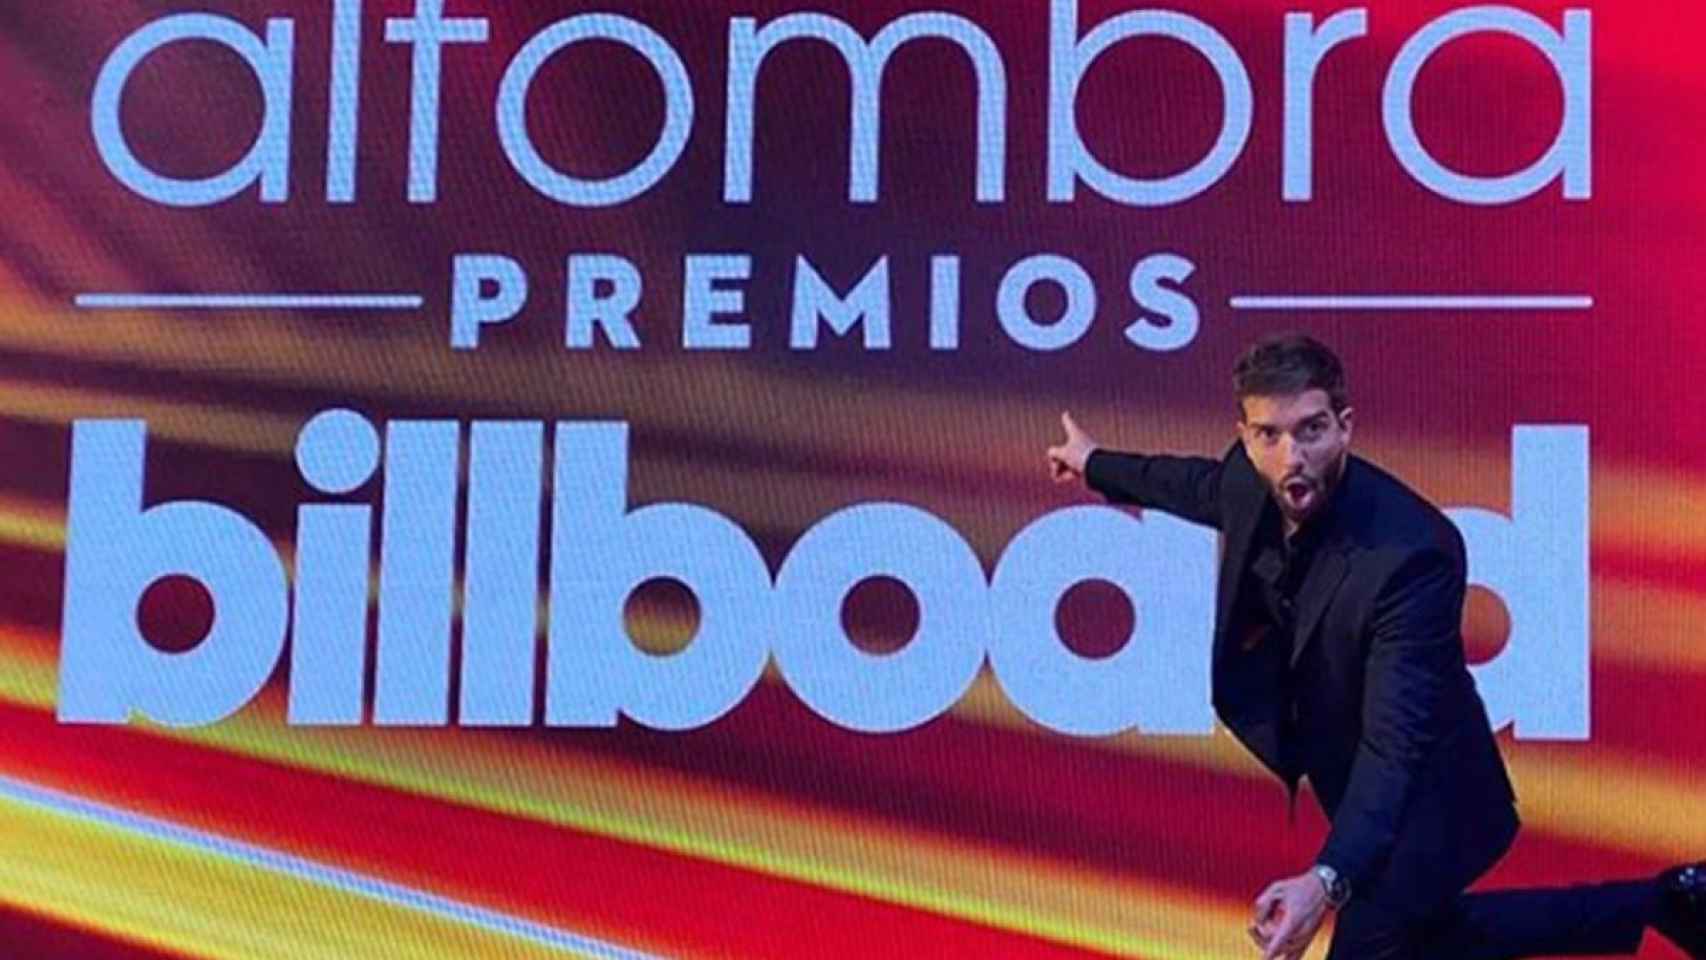 Pablo Alborán en la noche de los premios Latin Billboard 2020 /INSTAGRAM